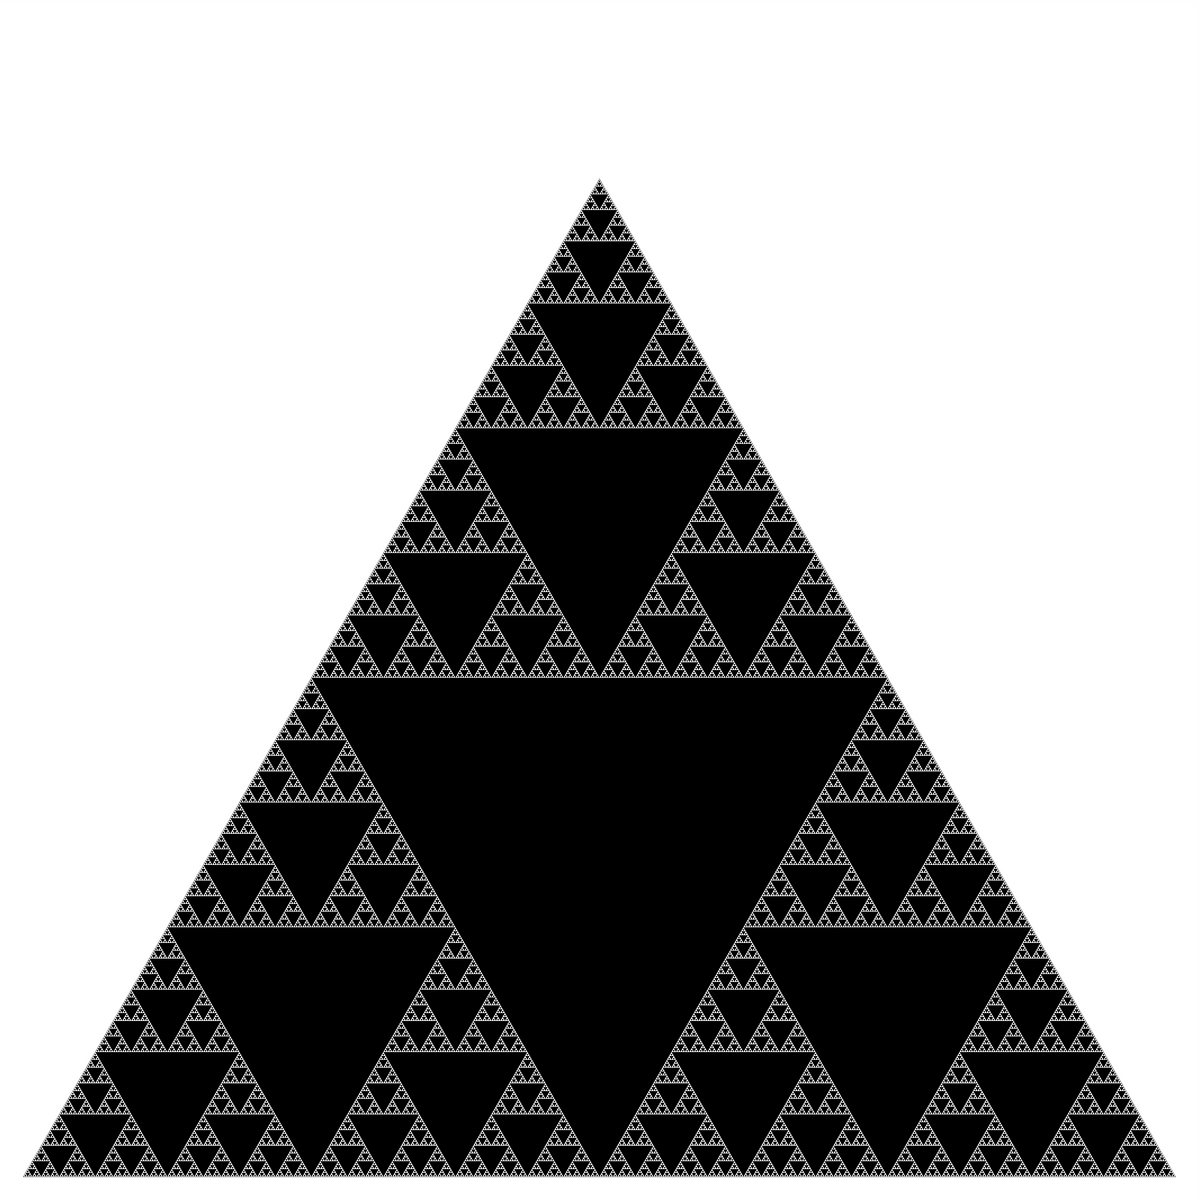 Sierpinski triangle of order 9